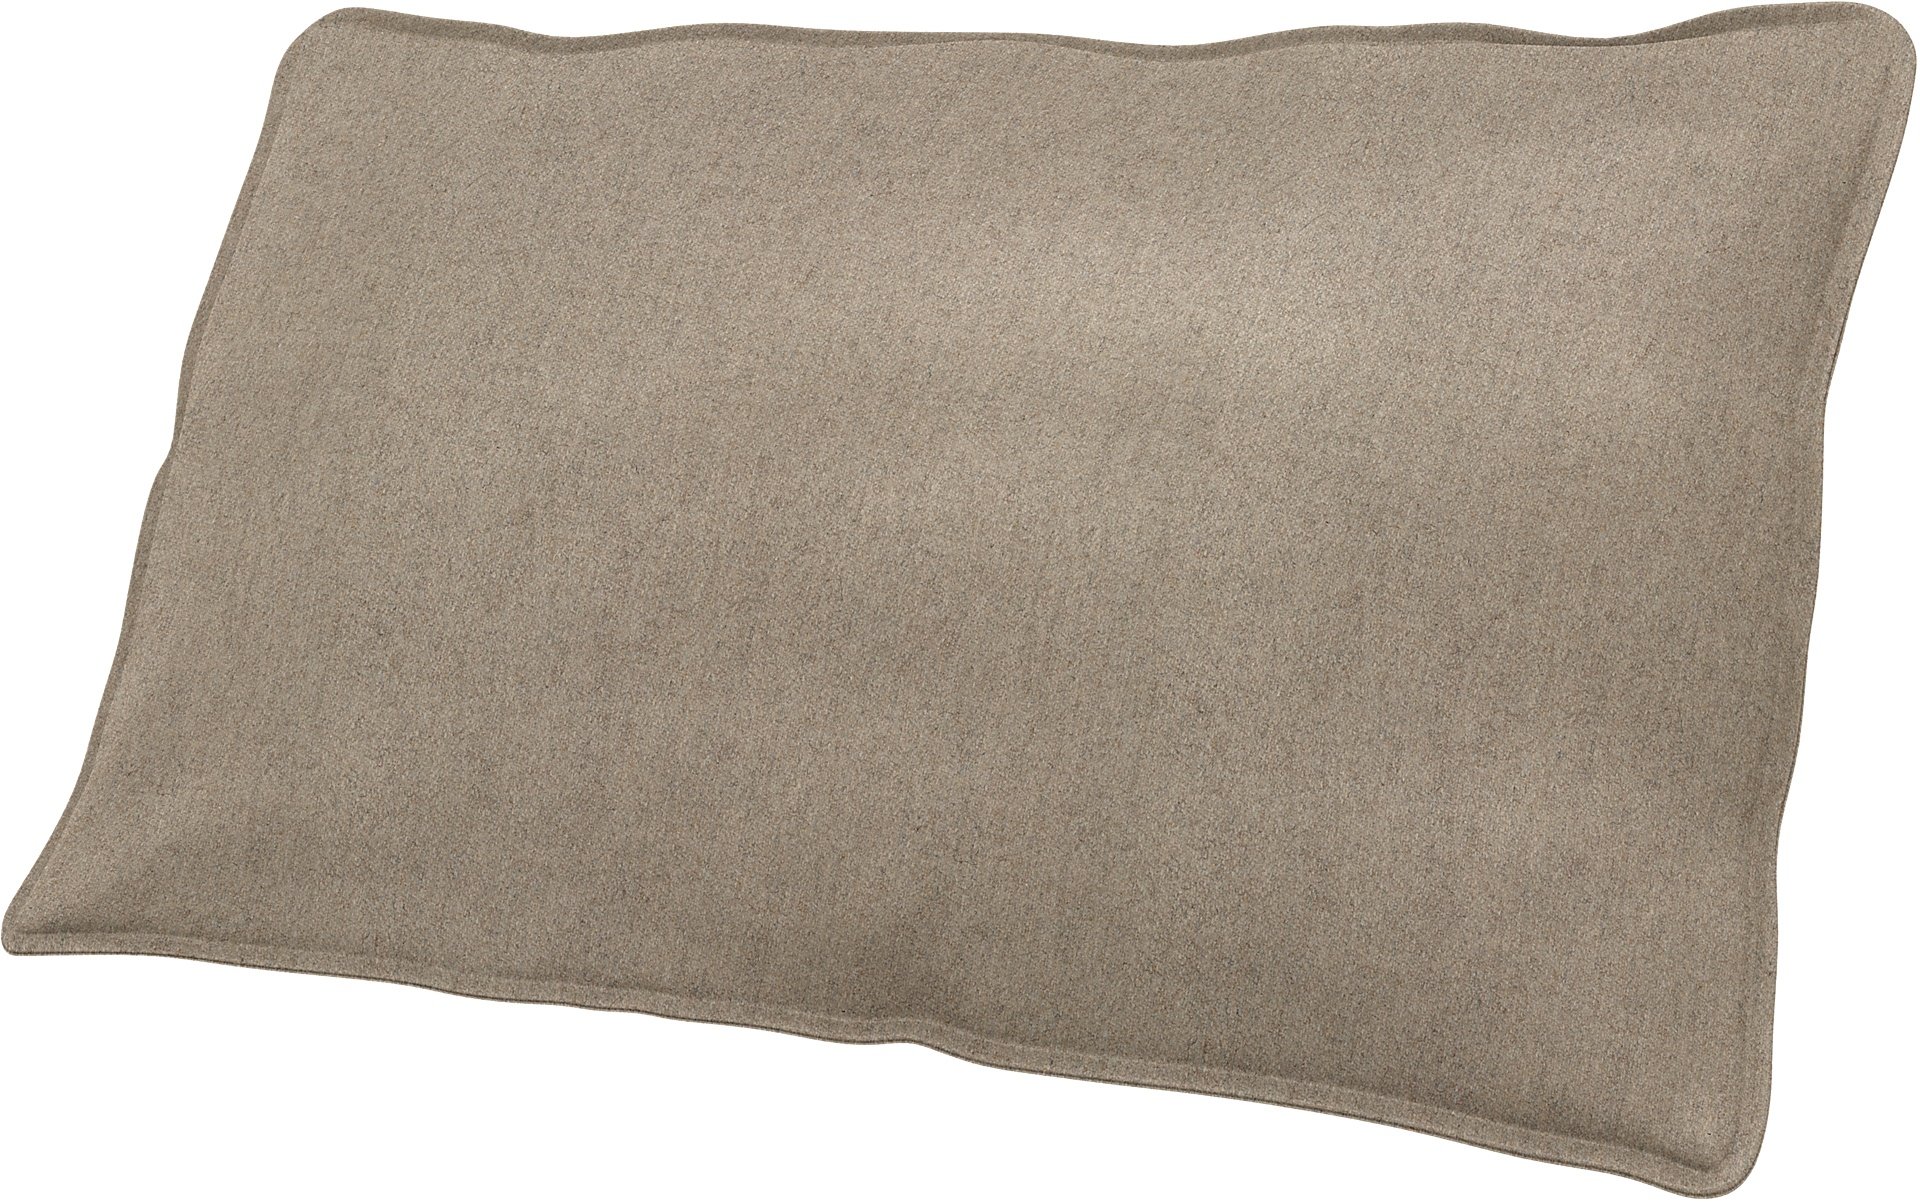 IKEA - Soderhamn Small Decorative Cushion Cover, Birch, Wool - Bemz